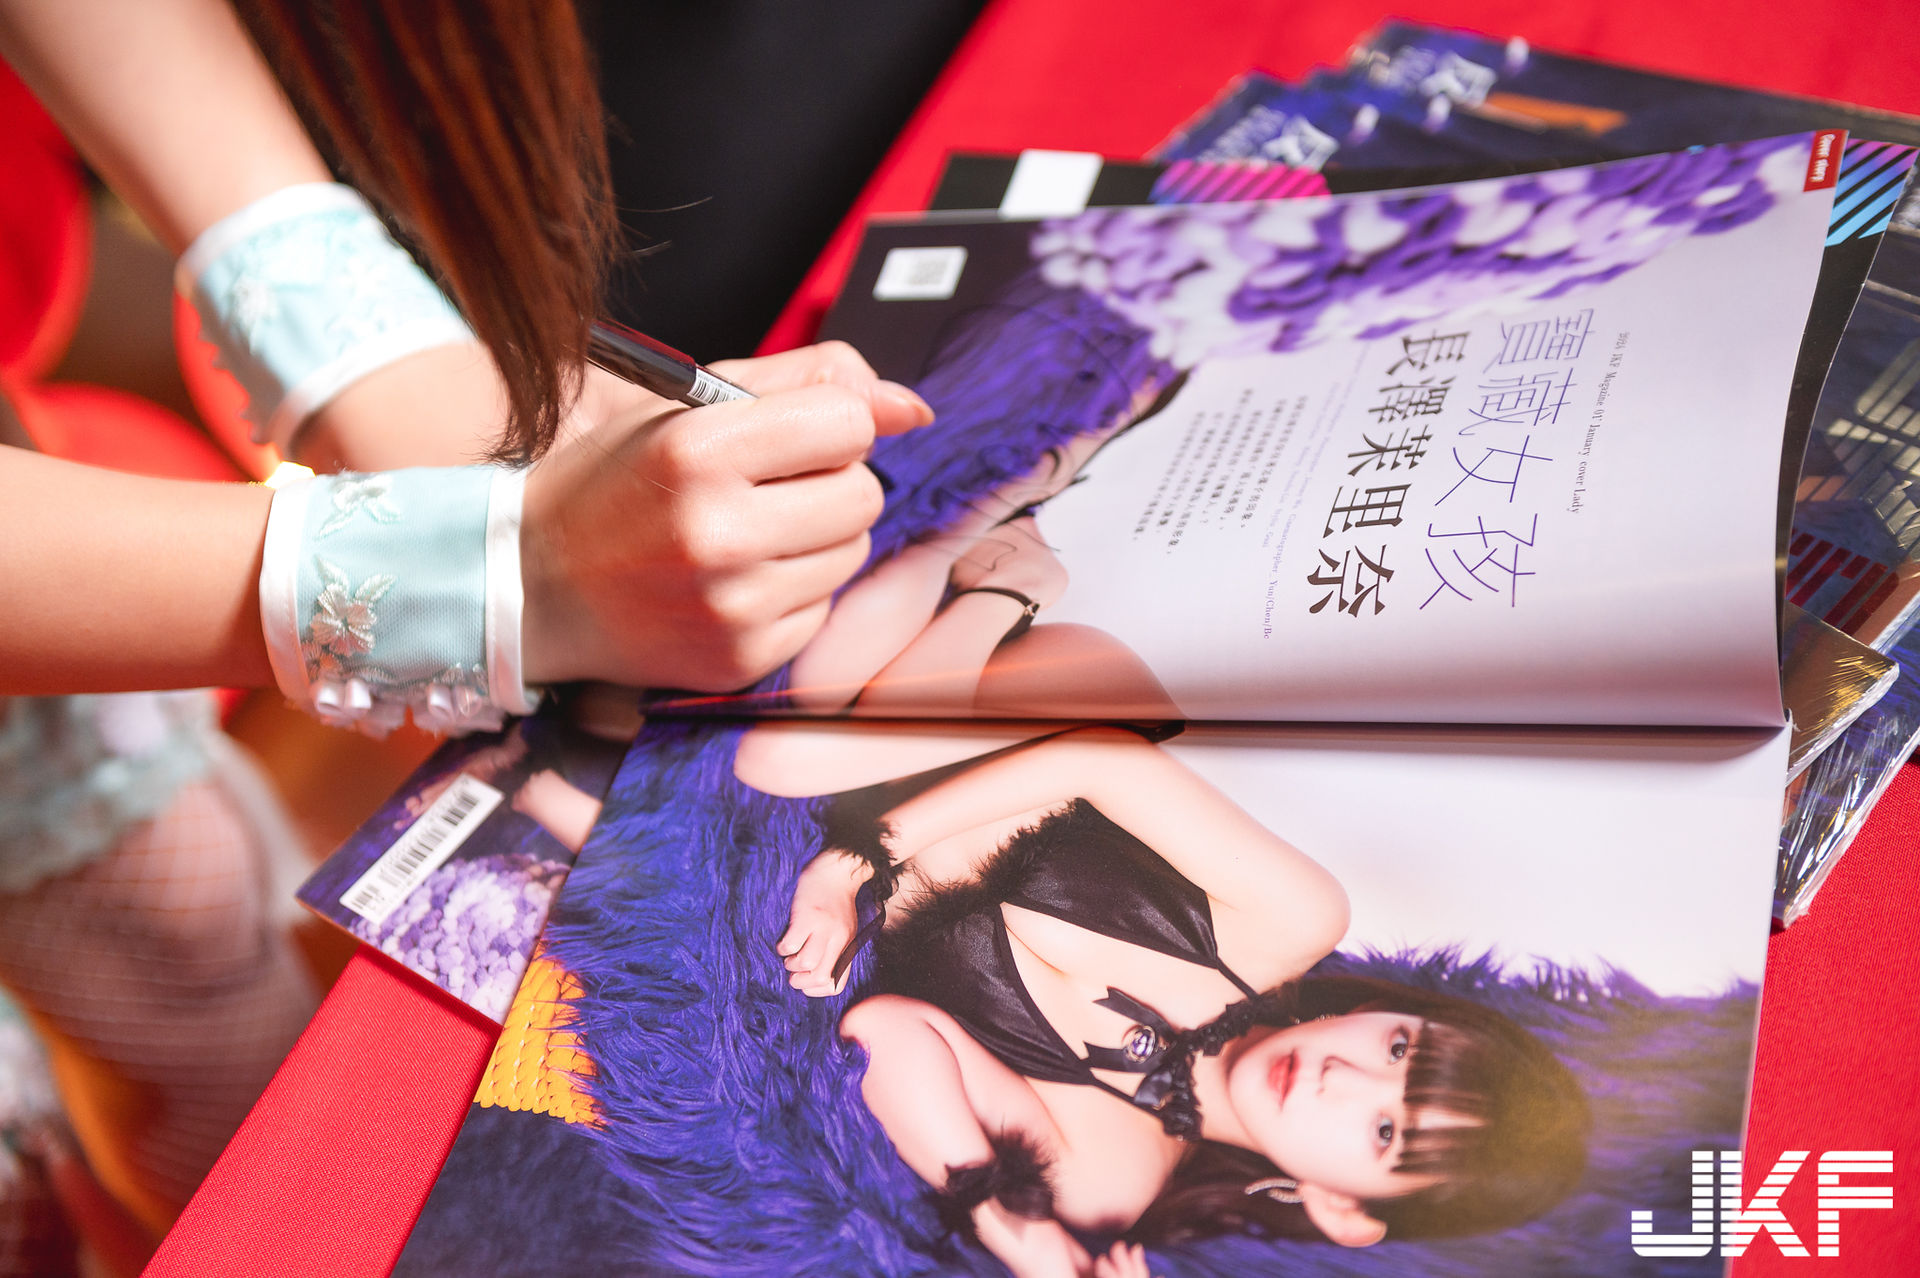 JKF VIP限定活動 長澤茉里奈簽名會 的活動圖片